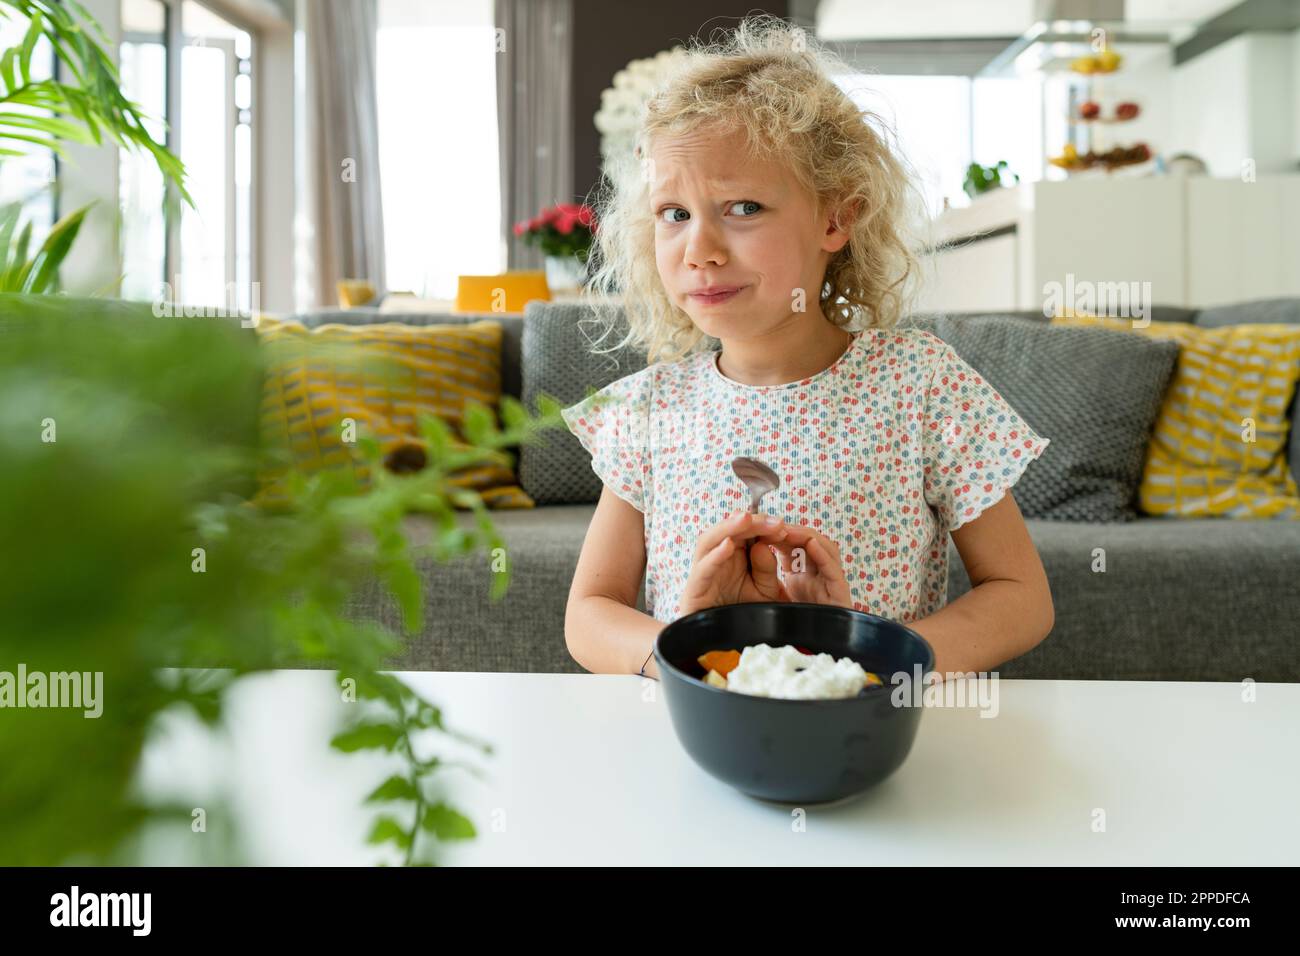 Fille blonde refusant de manger dans un bol à la maison Banque D'Images